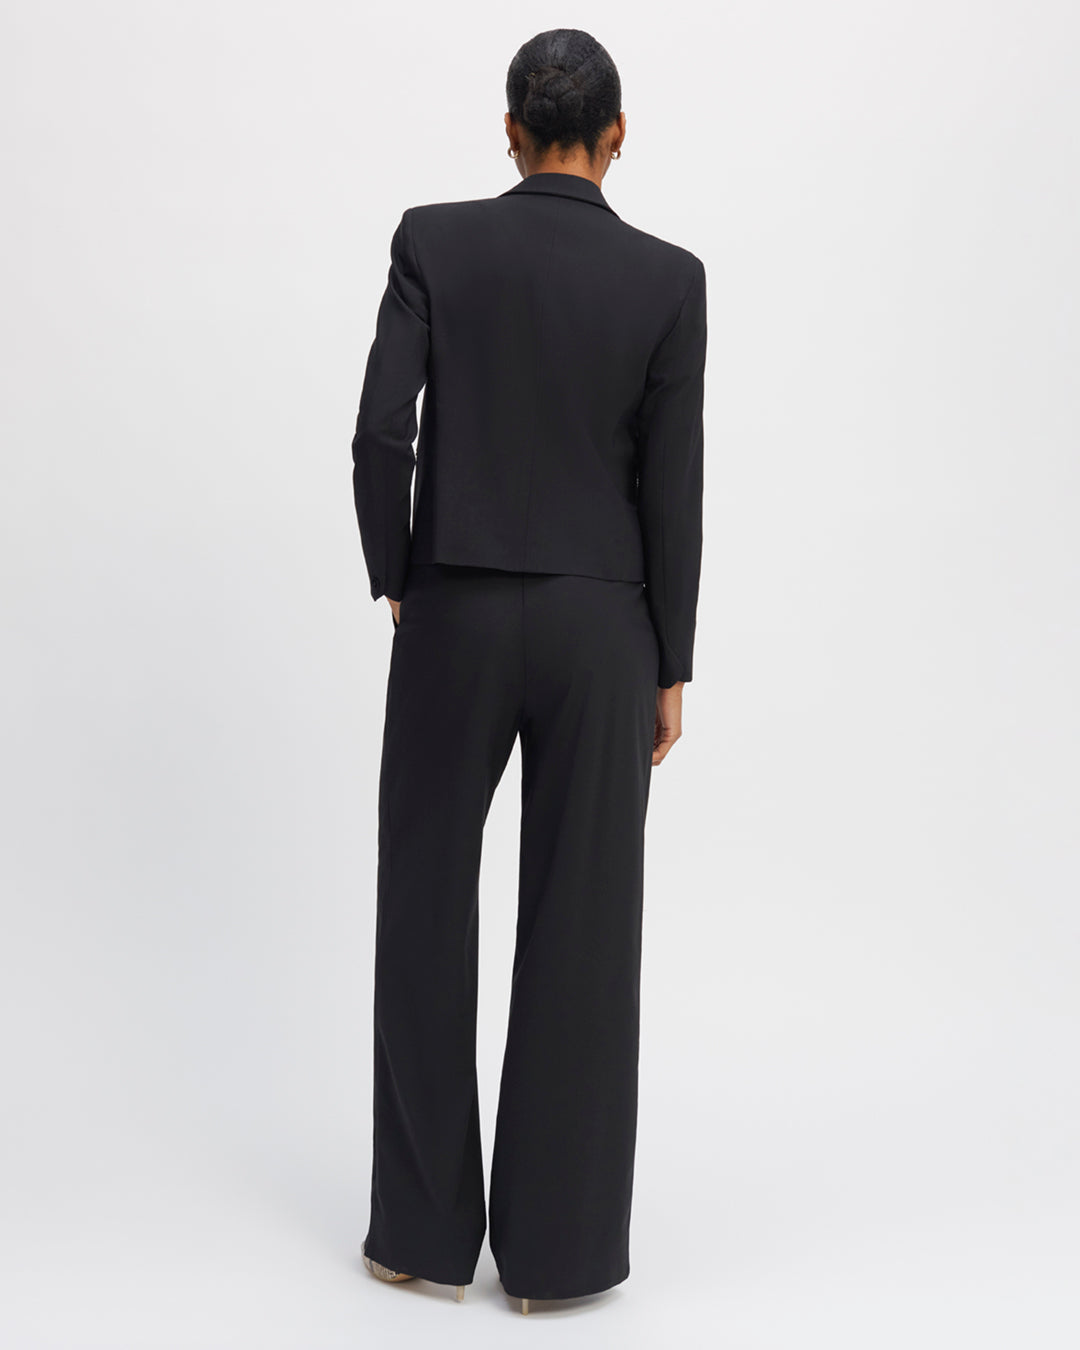 Tailor-pants-black-Palazzo-cut-High-waist-Details-double-pleated-waist-Low-leg-XXL-Dessine-leg-waist-Belt-buckle-17H10-tailors-for-women-paris-